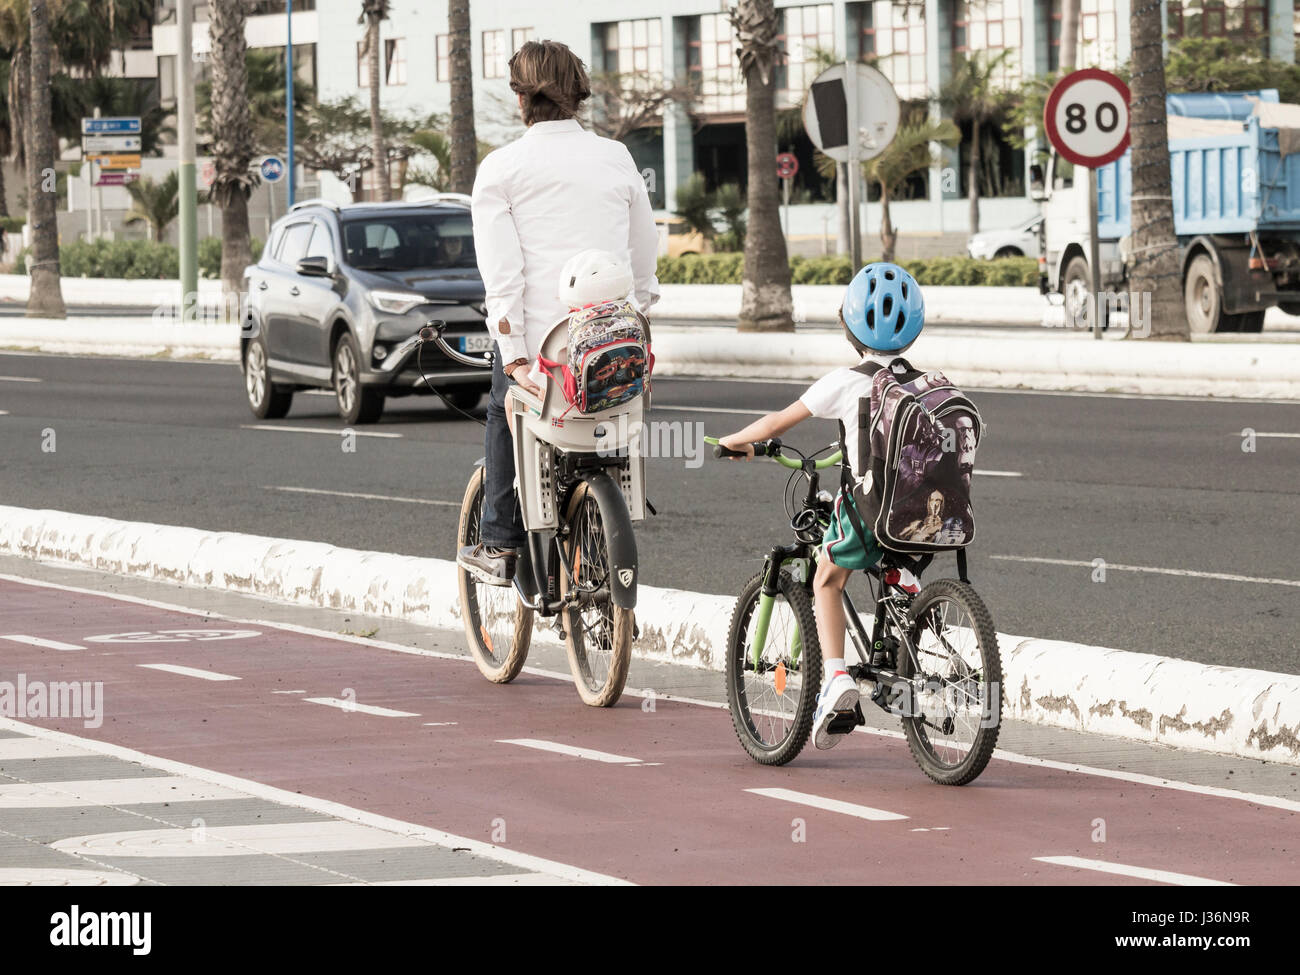 Jeune garçon en uniforme scolaire, à vélo, à l'école, derrière un adulte qui porte un petit enfant. Banque D'Images